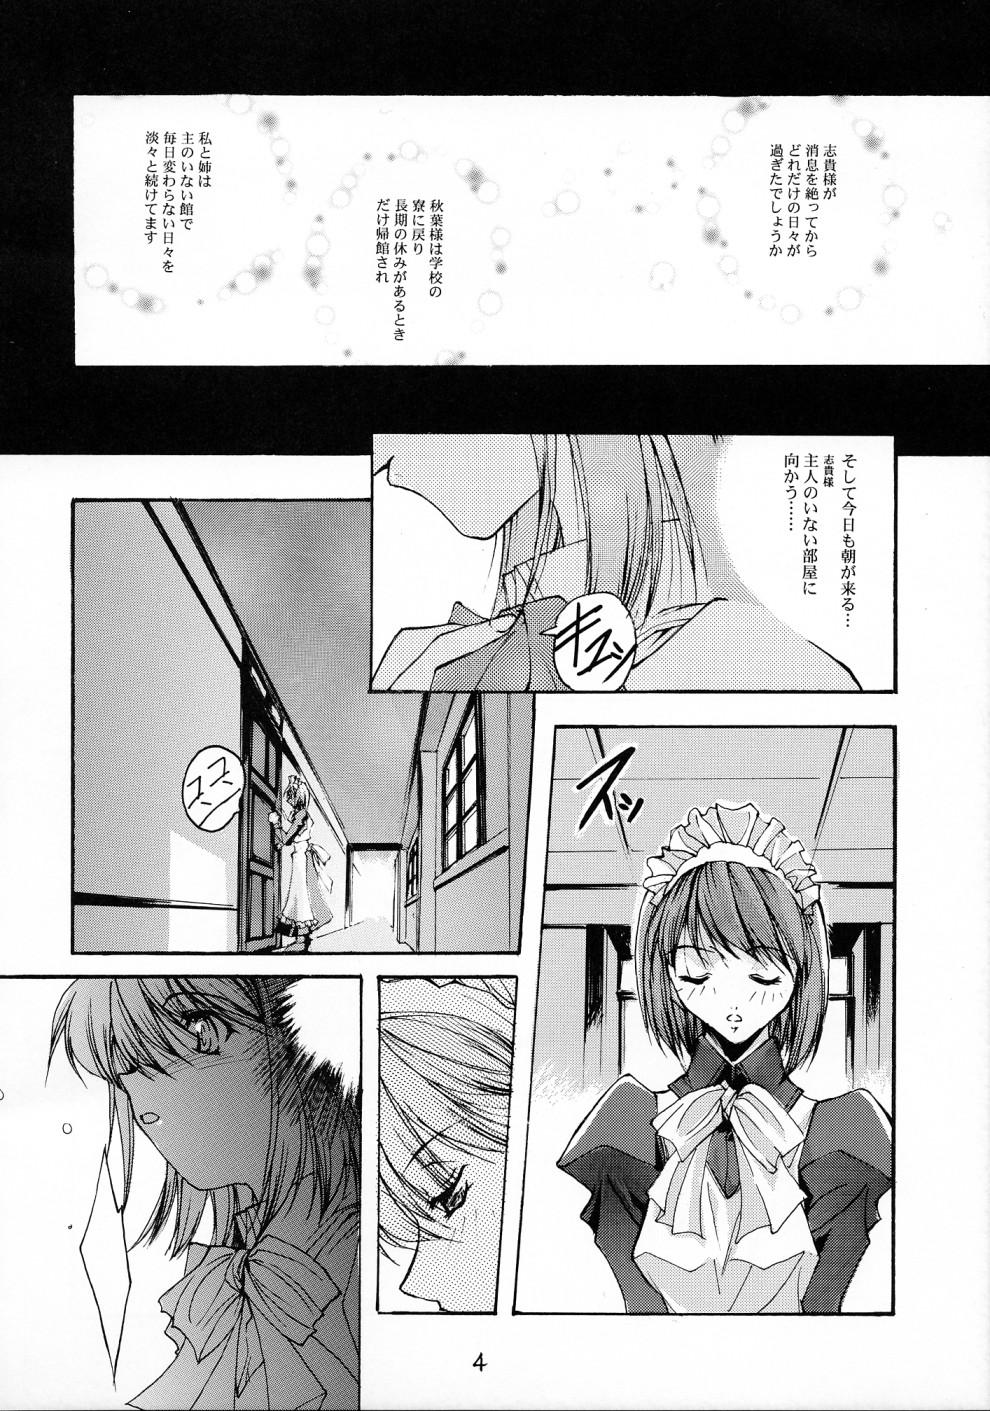 Panty Gekka Shoujo 2 - Tsukihime Francais - Page 3